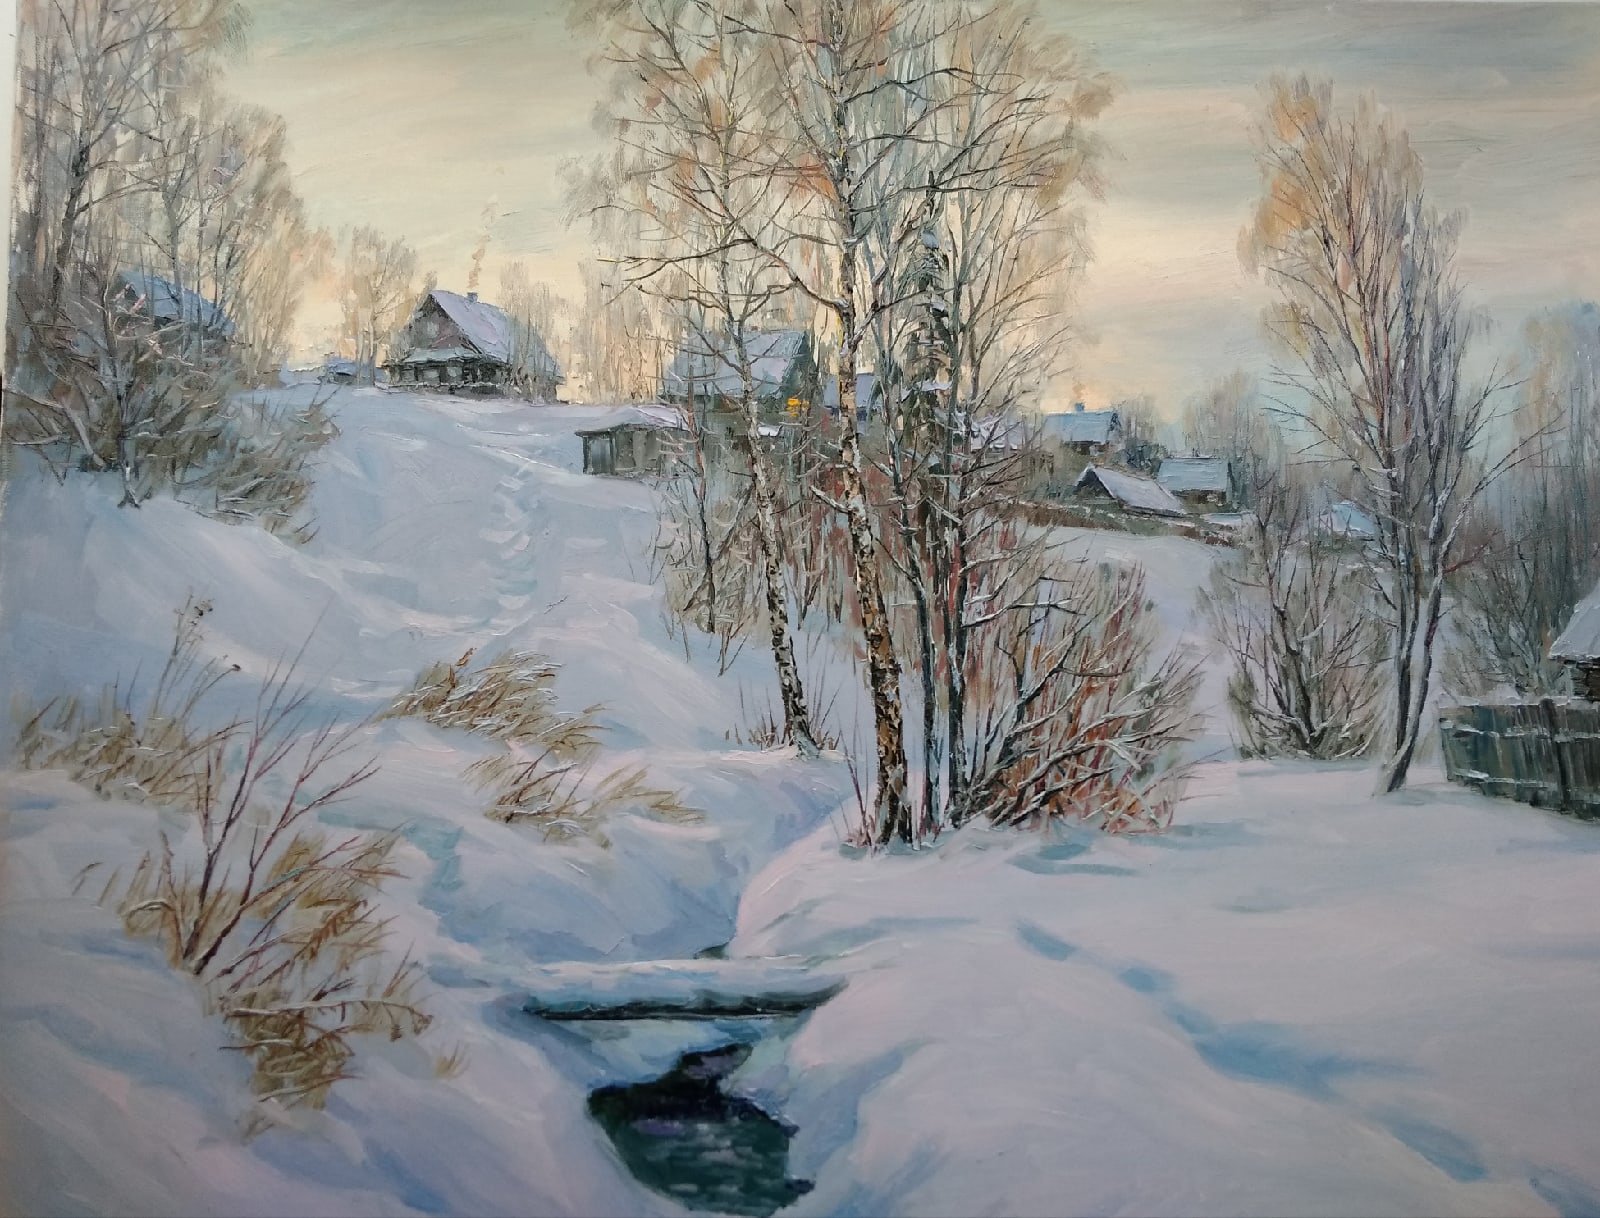 The Evening Lights - 1, Vyacheslav Cherdakov, Buy the painting Oil